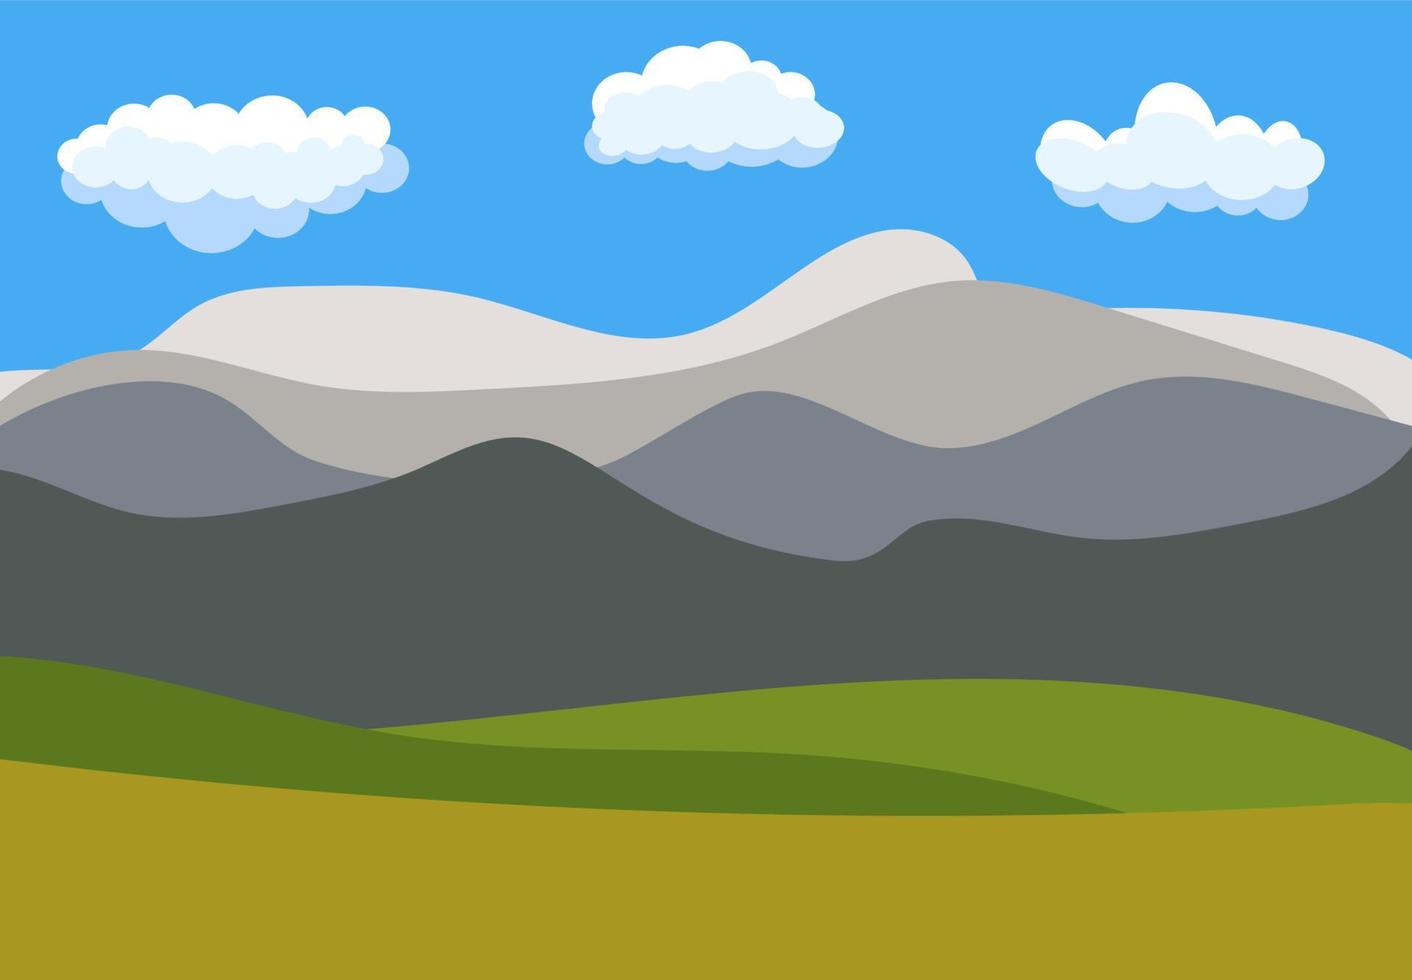 natürliche karikaturlandschaft im flachen stil mit blauem himmel, wolken, hügeln und bergen. Vektor-Illustration vektor